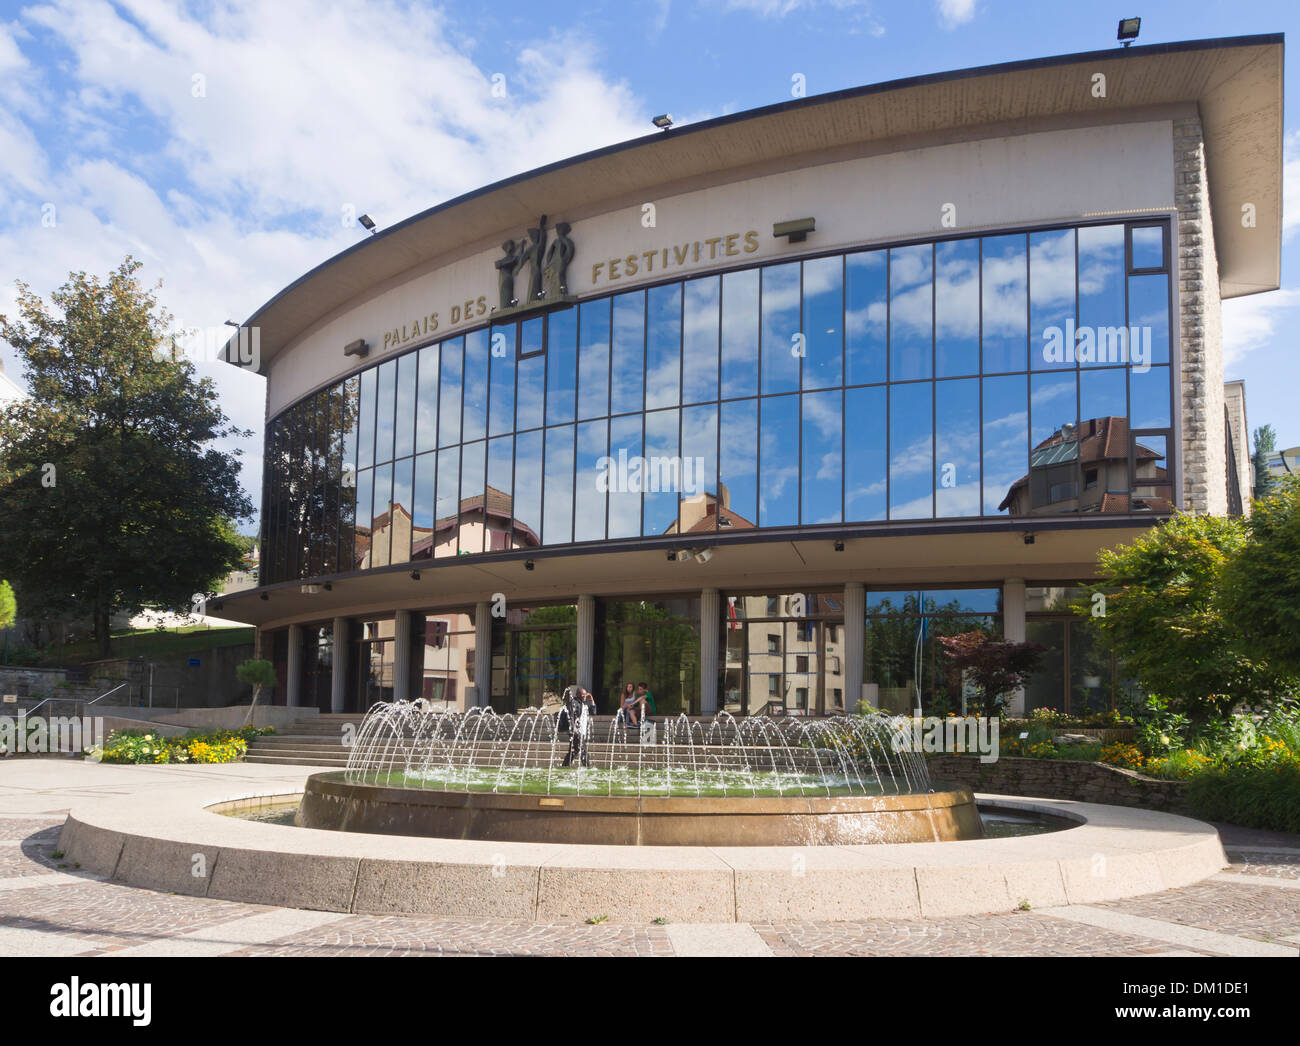 Palais des festivites à Evian-Les-bains France une destination touristique populaire Banque D'Images